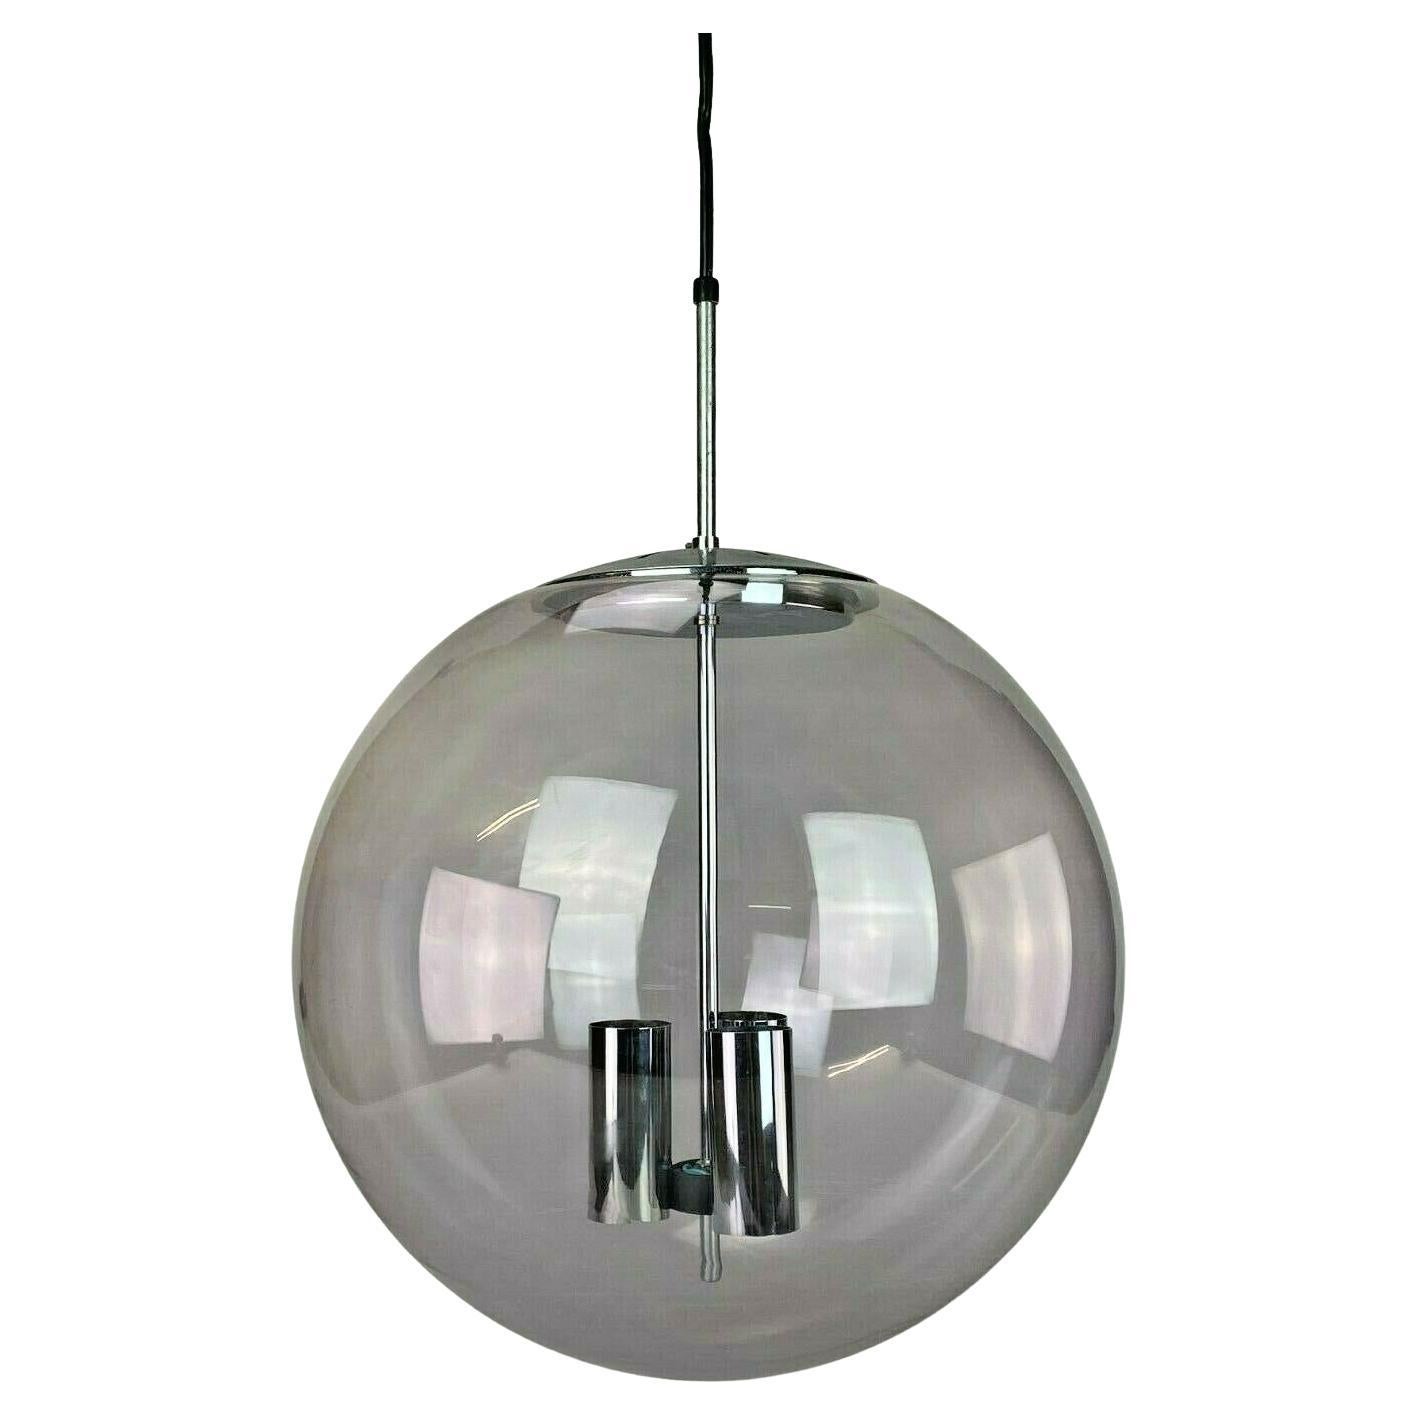 XXL 60s 70s Lamp Light Ceiling Lamp Limburg Spherical Lamp Ball Design For Sale